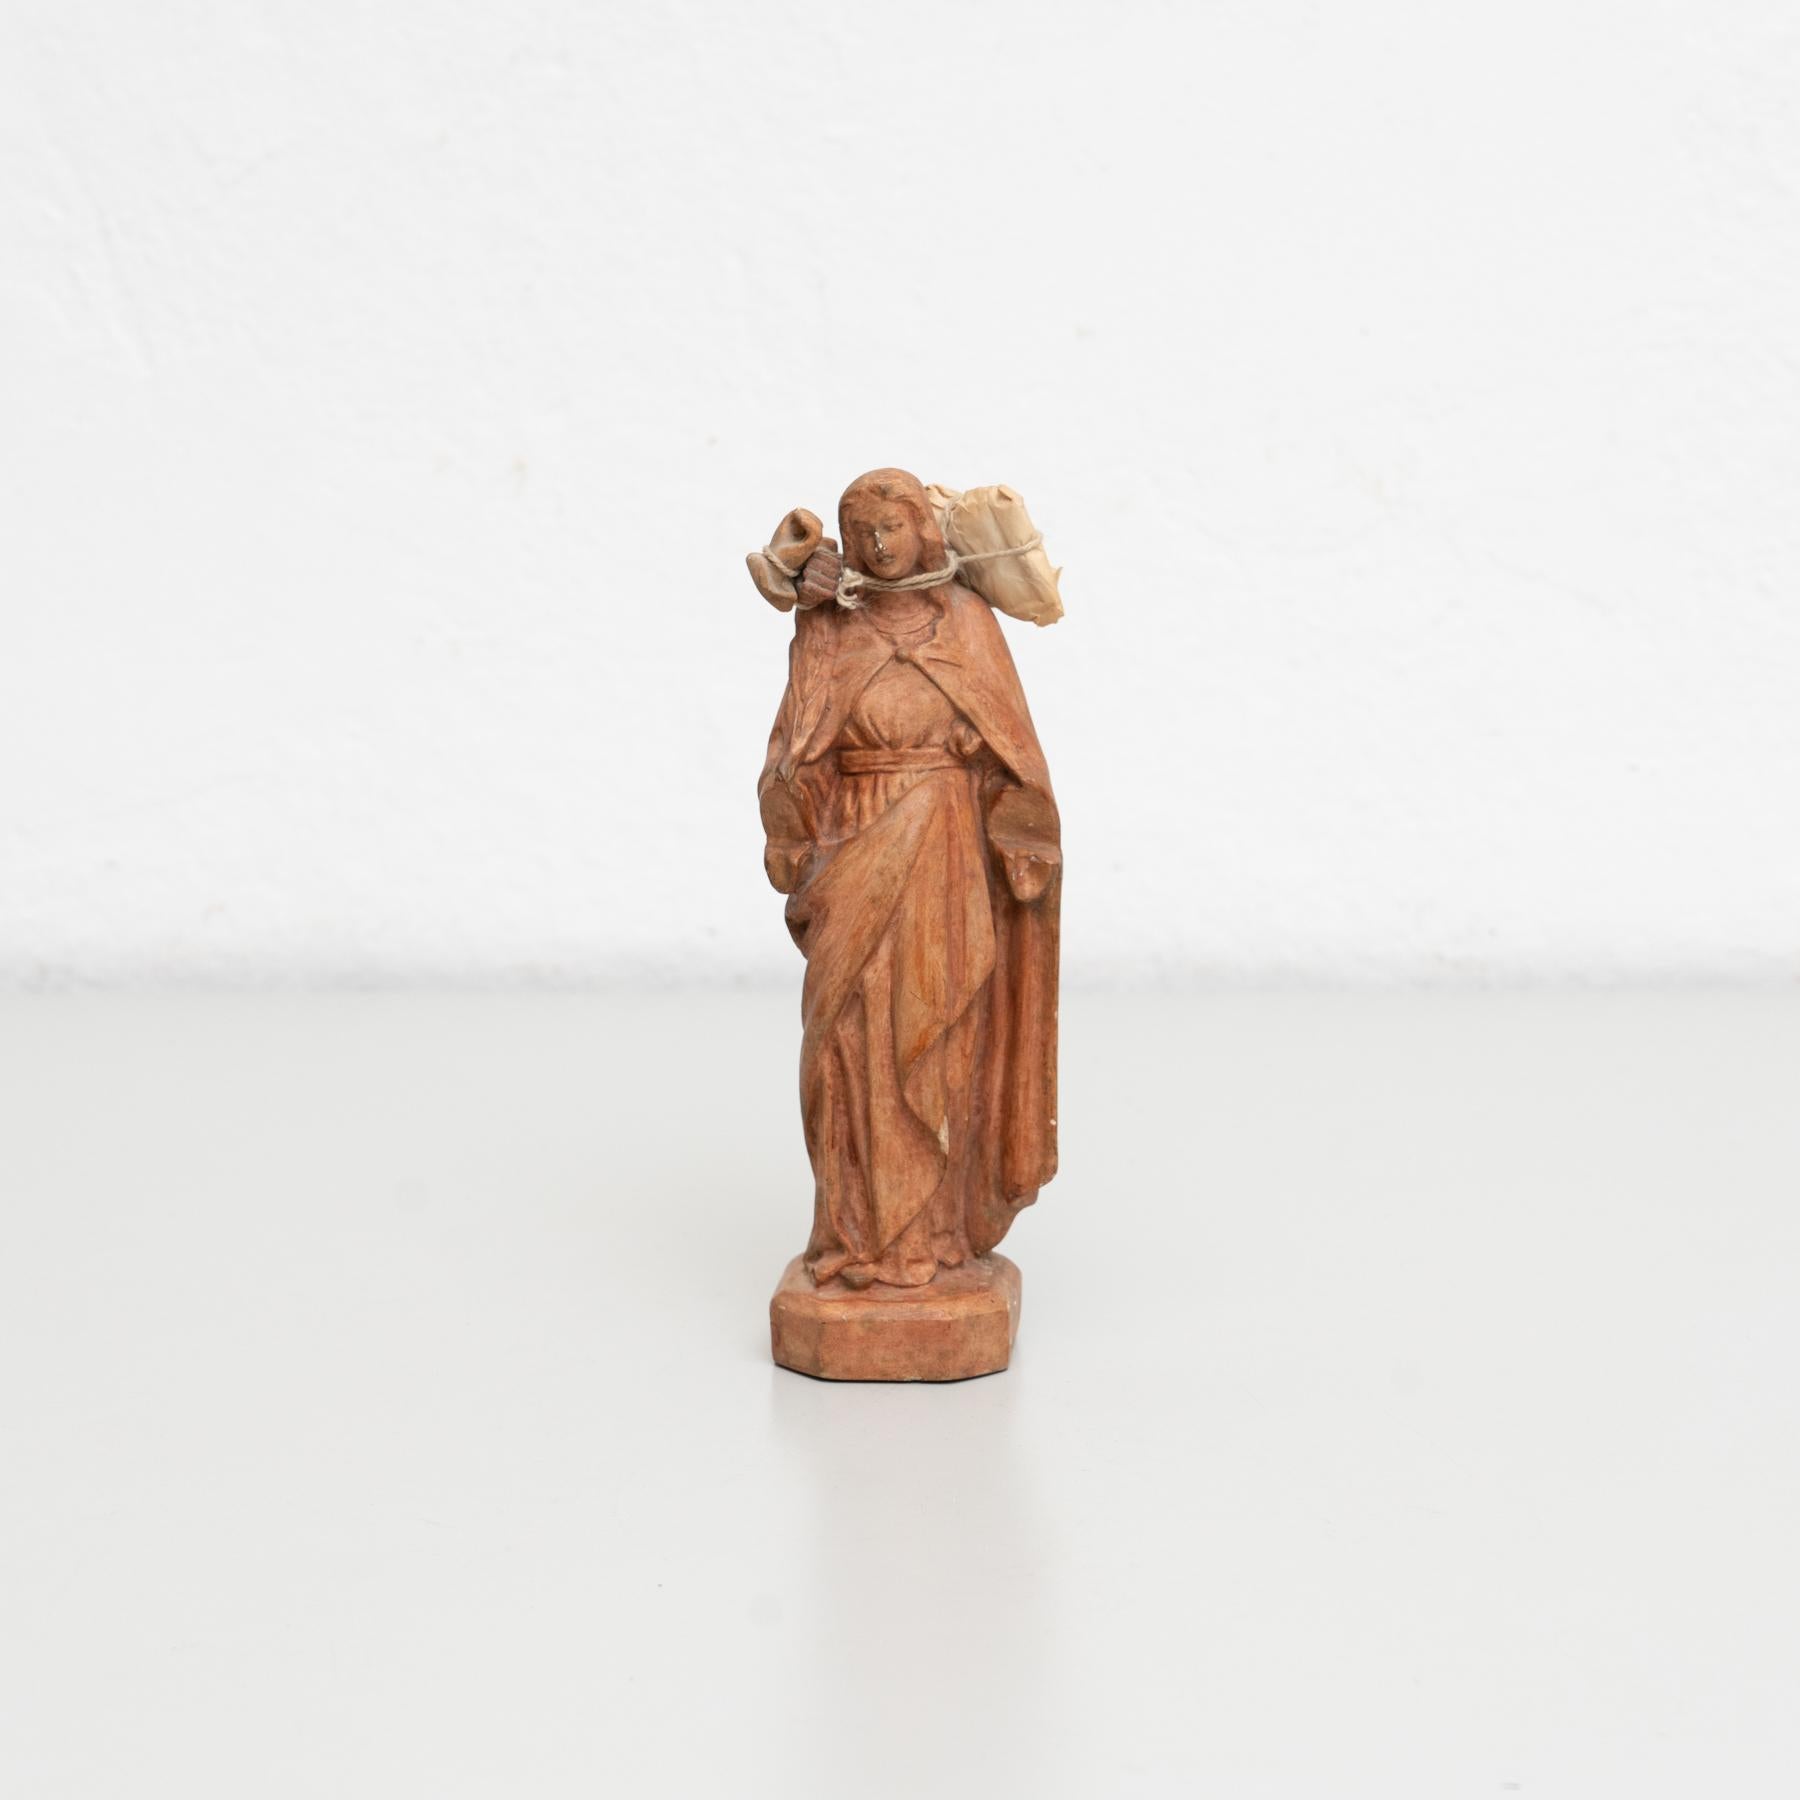 Figure religieuse traditionnelle en plâtre représentant une vierge.

Fabriqué dans un atelier catalan traditionnel à Olot, en Espagne, vers 1950.

En état d'origine, avec une usure mineure conforme à l'âge et à l'utilisation, préservant une belle